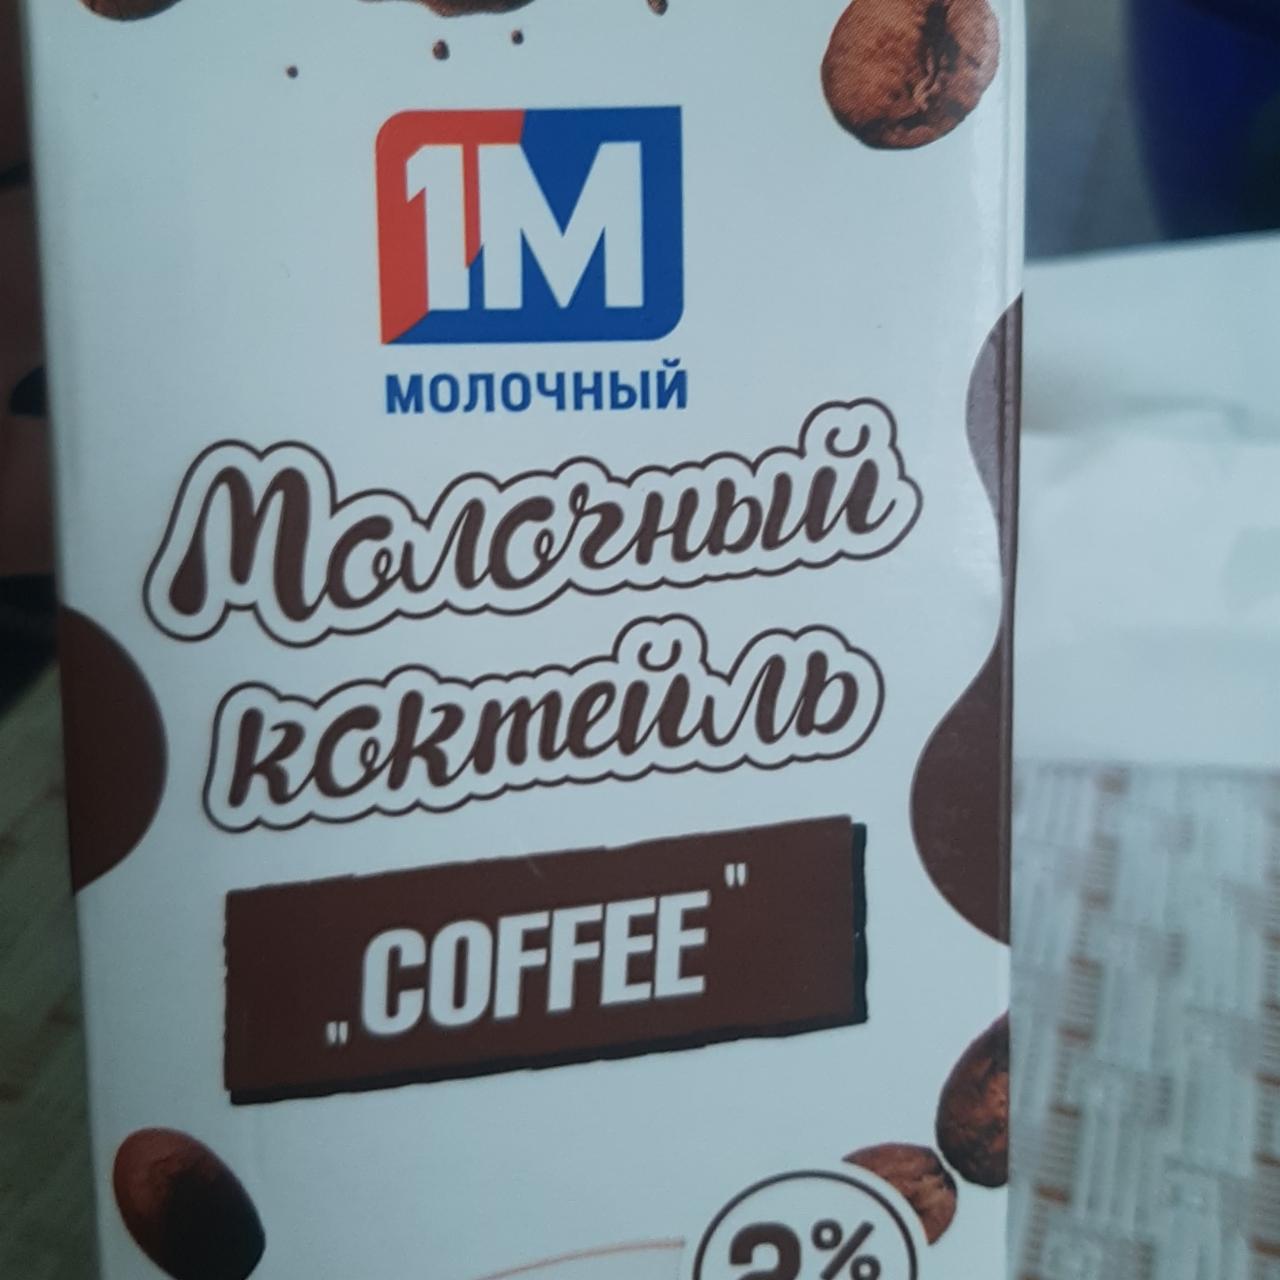 Фото - молочный коктейль coffee 1М